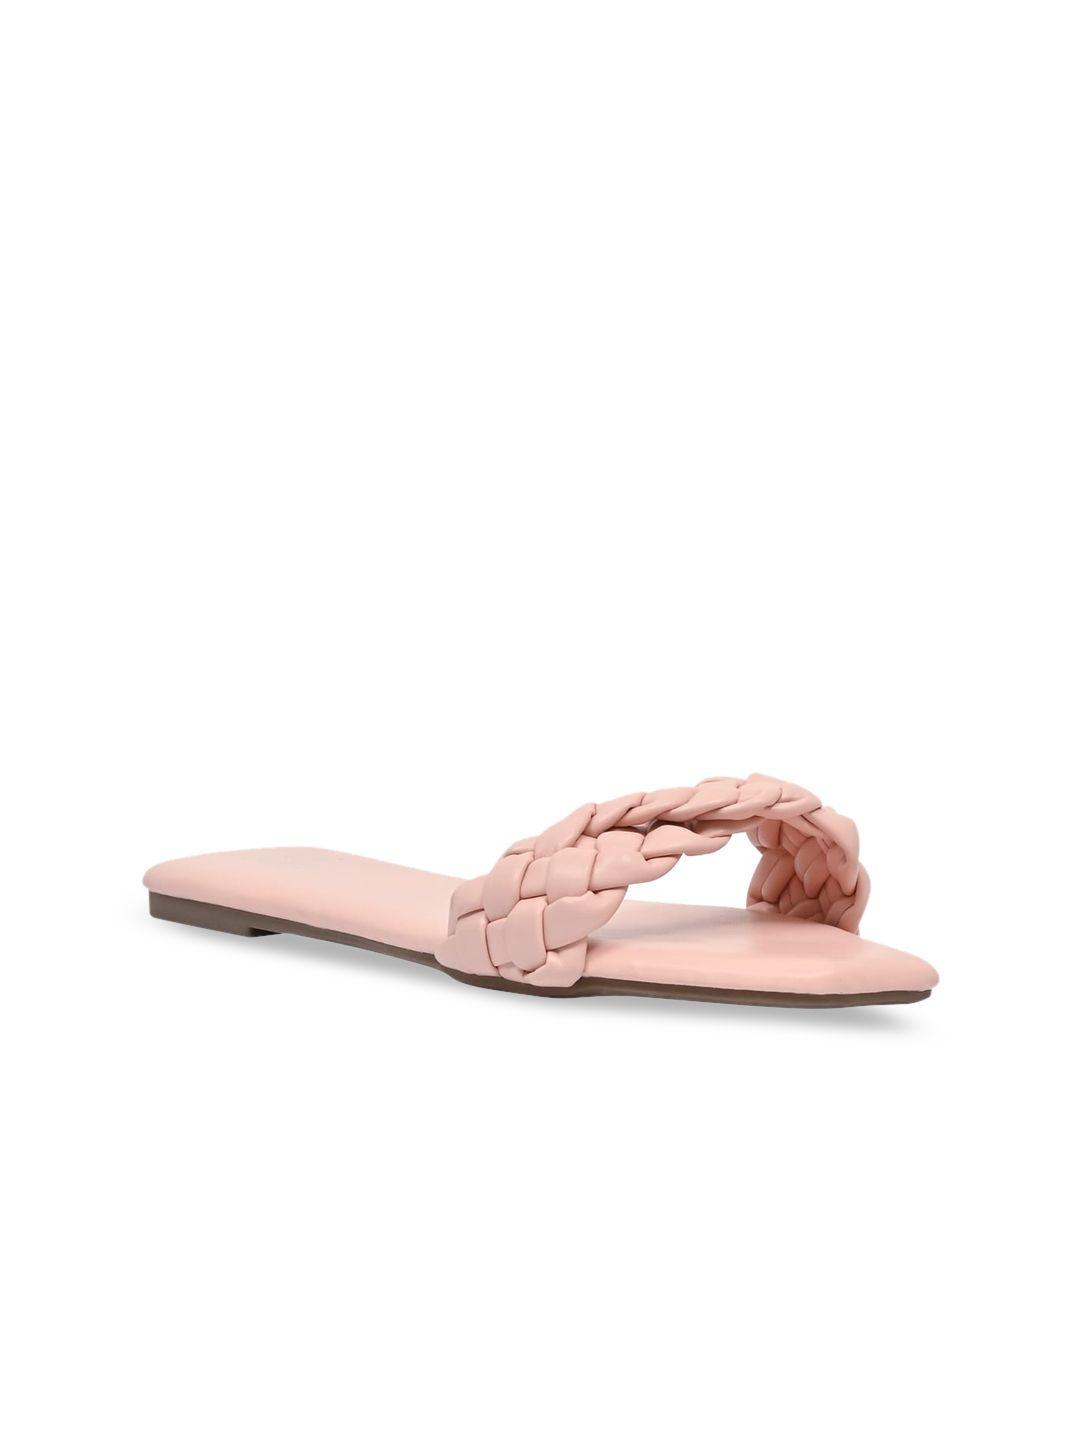 jove women pink open toe flats